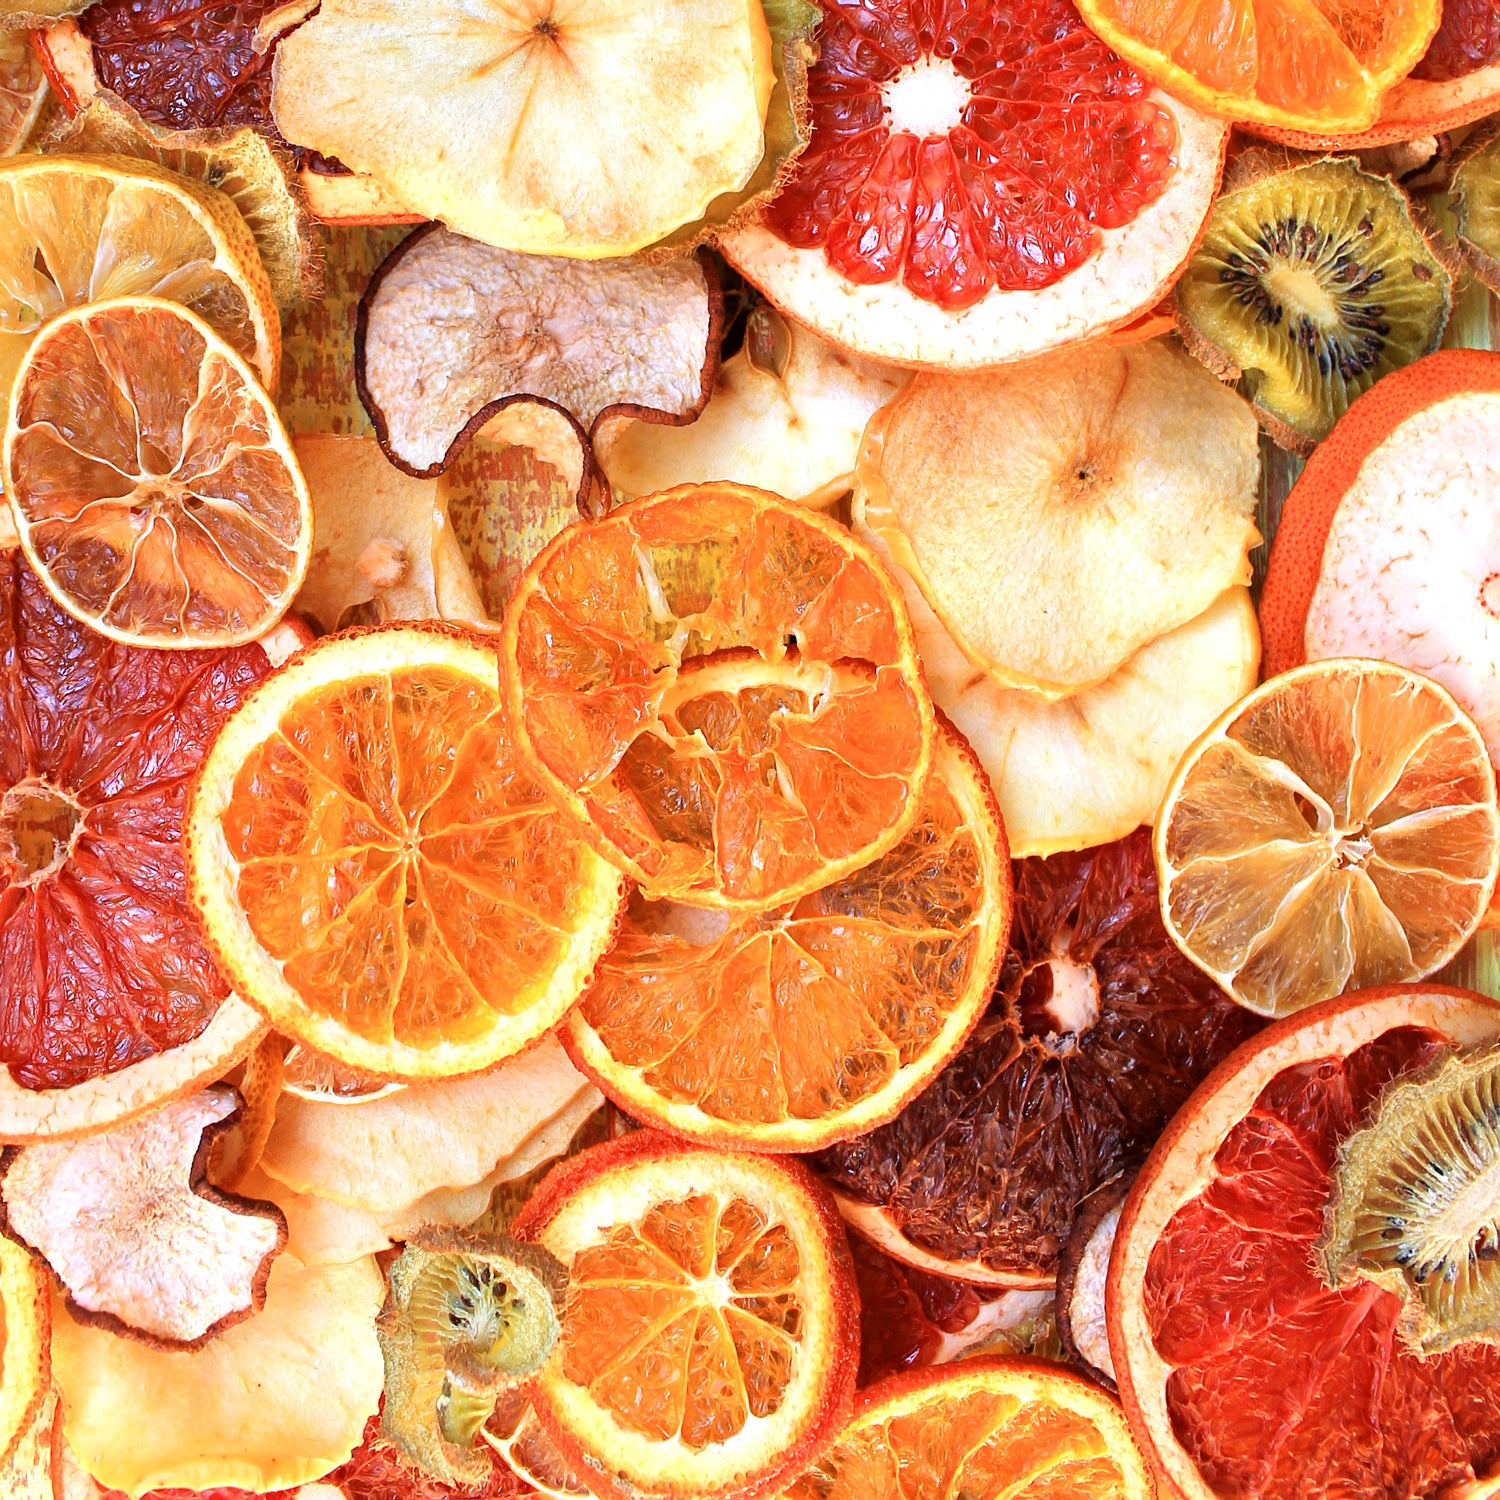 Orange, Lemon & Grapefruit Best Soy Wax Melts Scented Wax Cubes